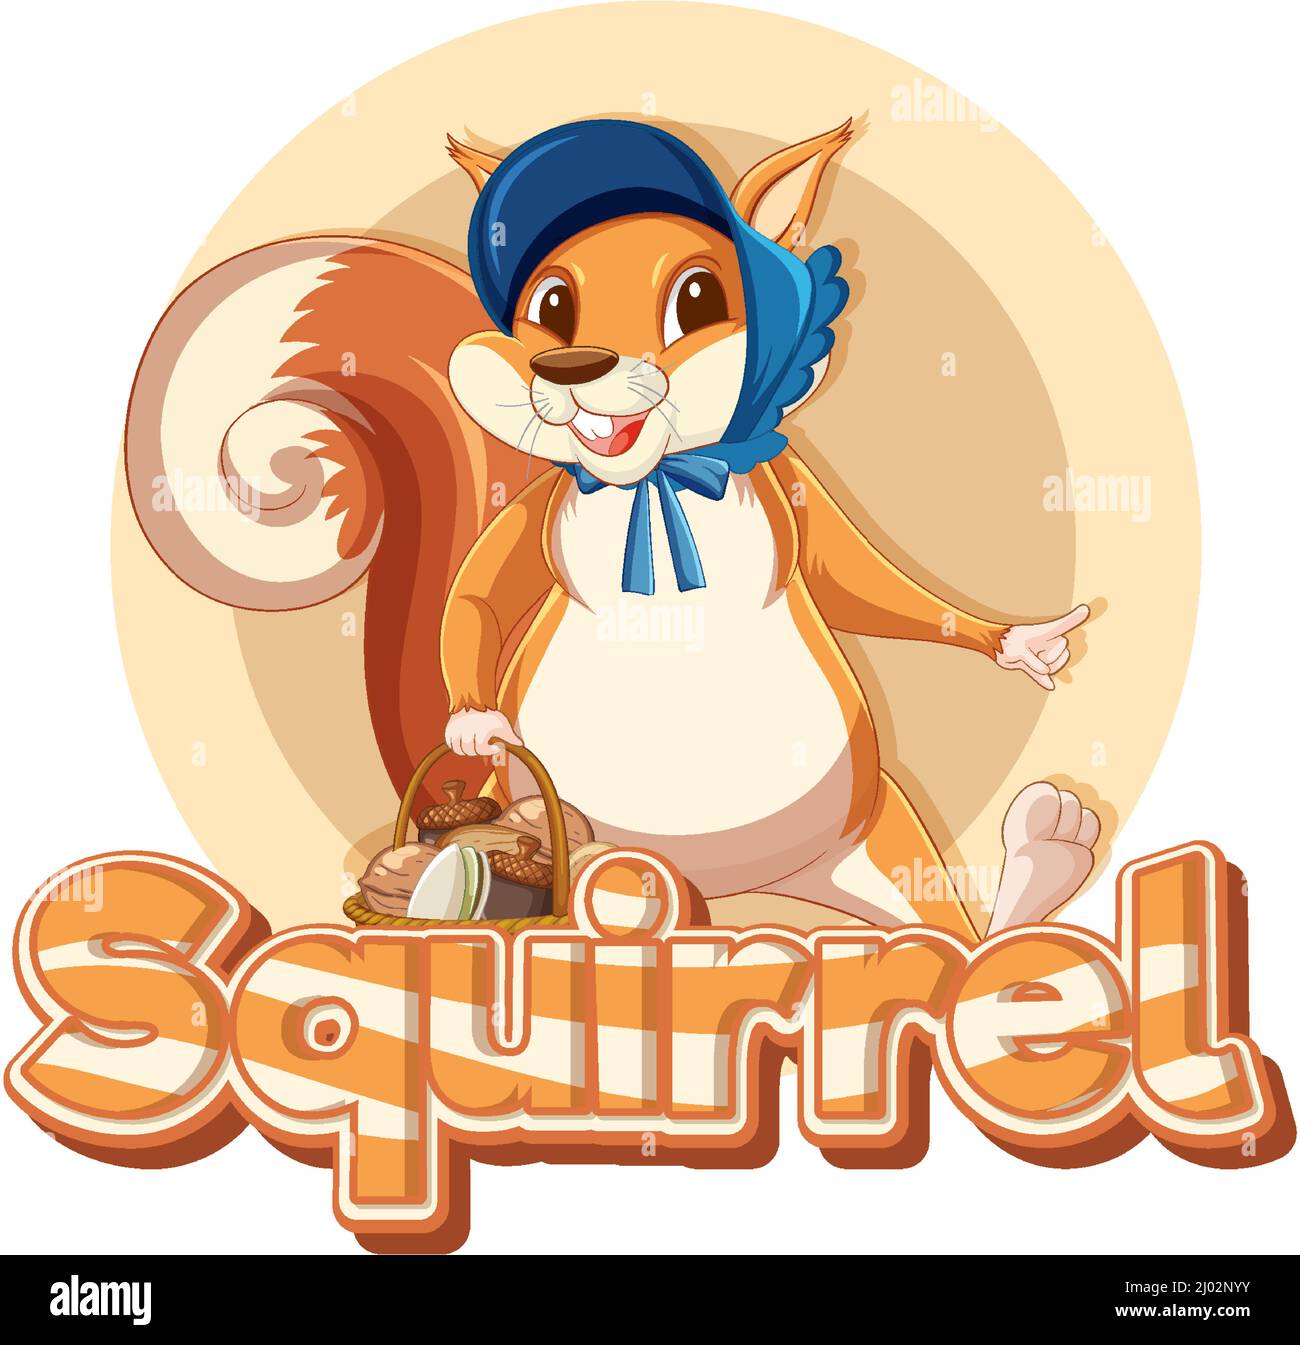 The Word Squirrel Immagini e Fotos Stock - Alamy